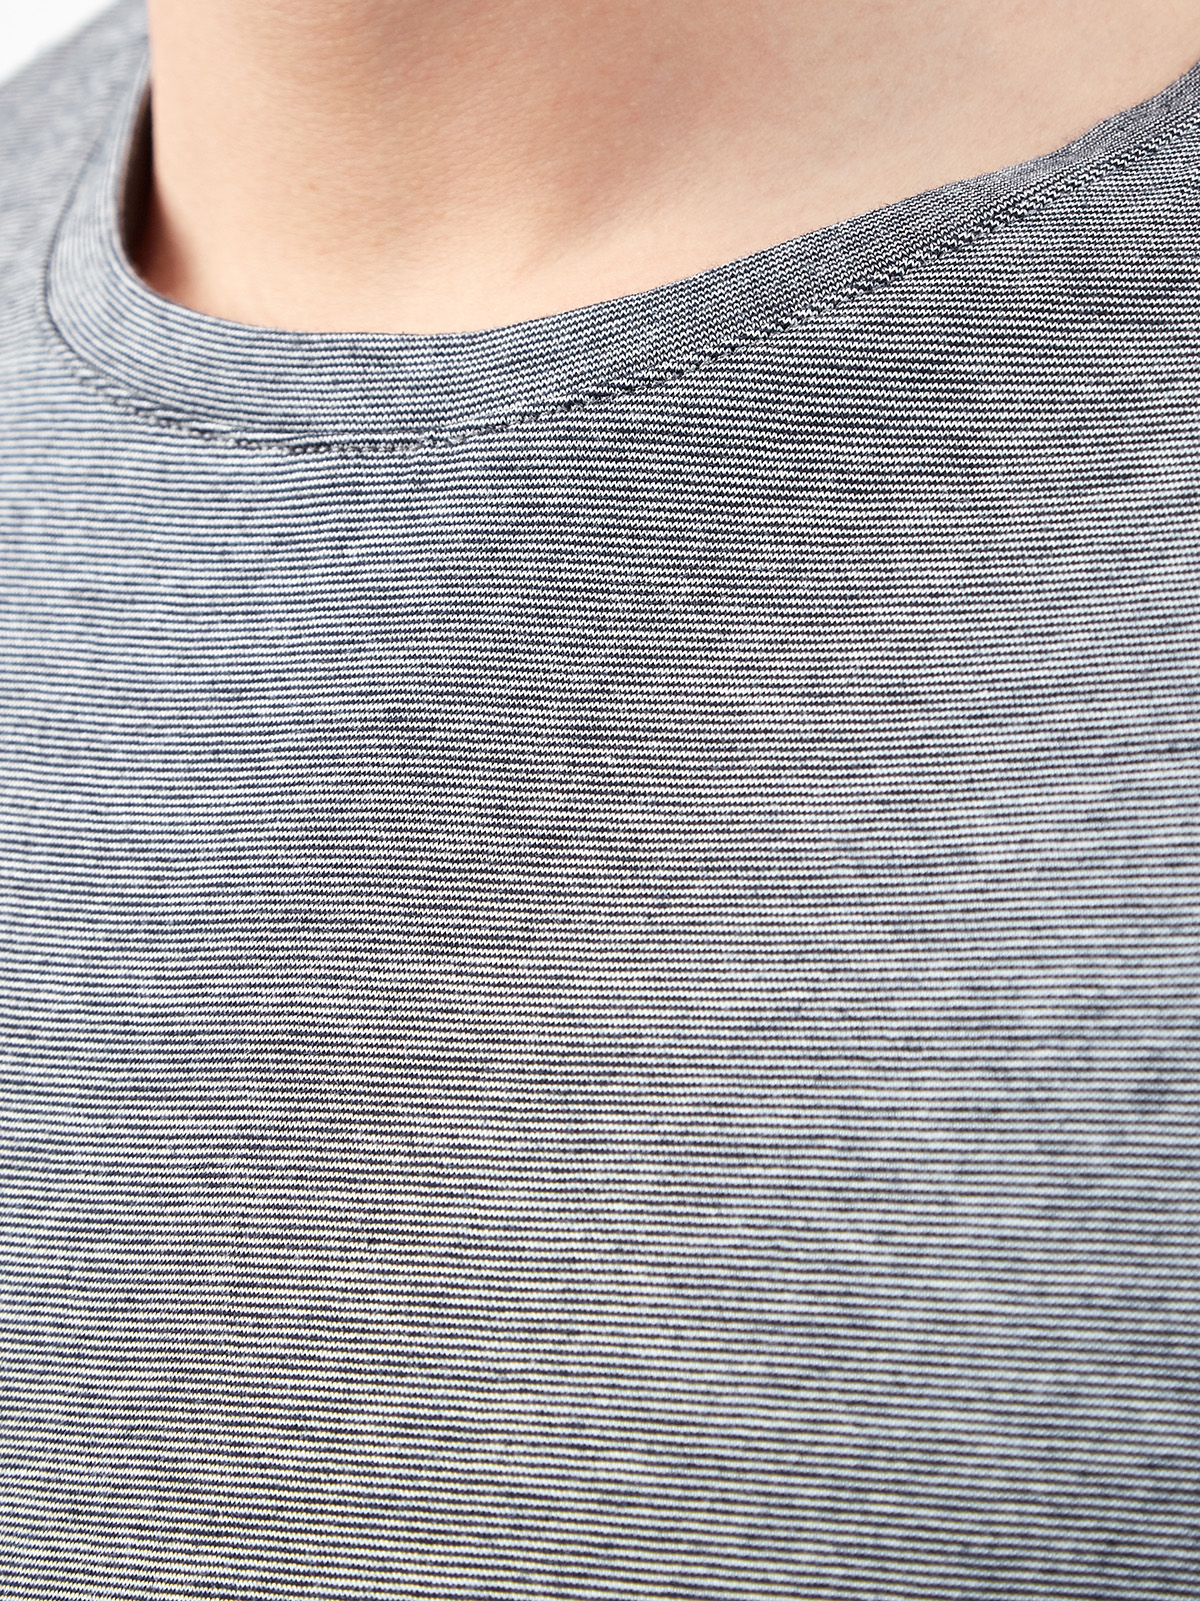 Хлопковая футболка с переплетением серых и белых волокон CUDGI, цвет серый, размер L;XL;2XL;4XL;5XL - фото 5